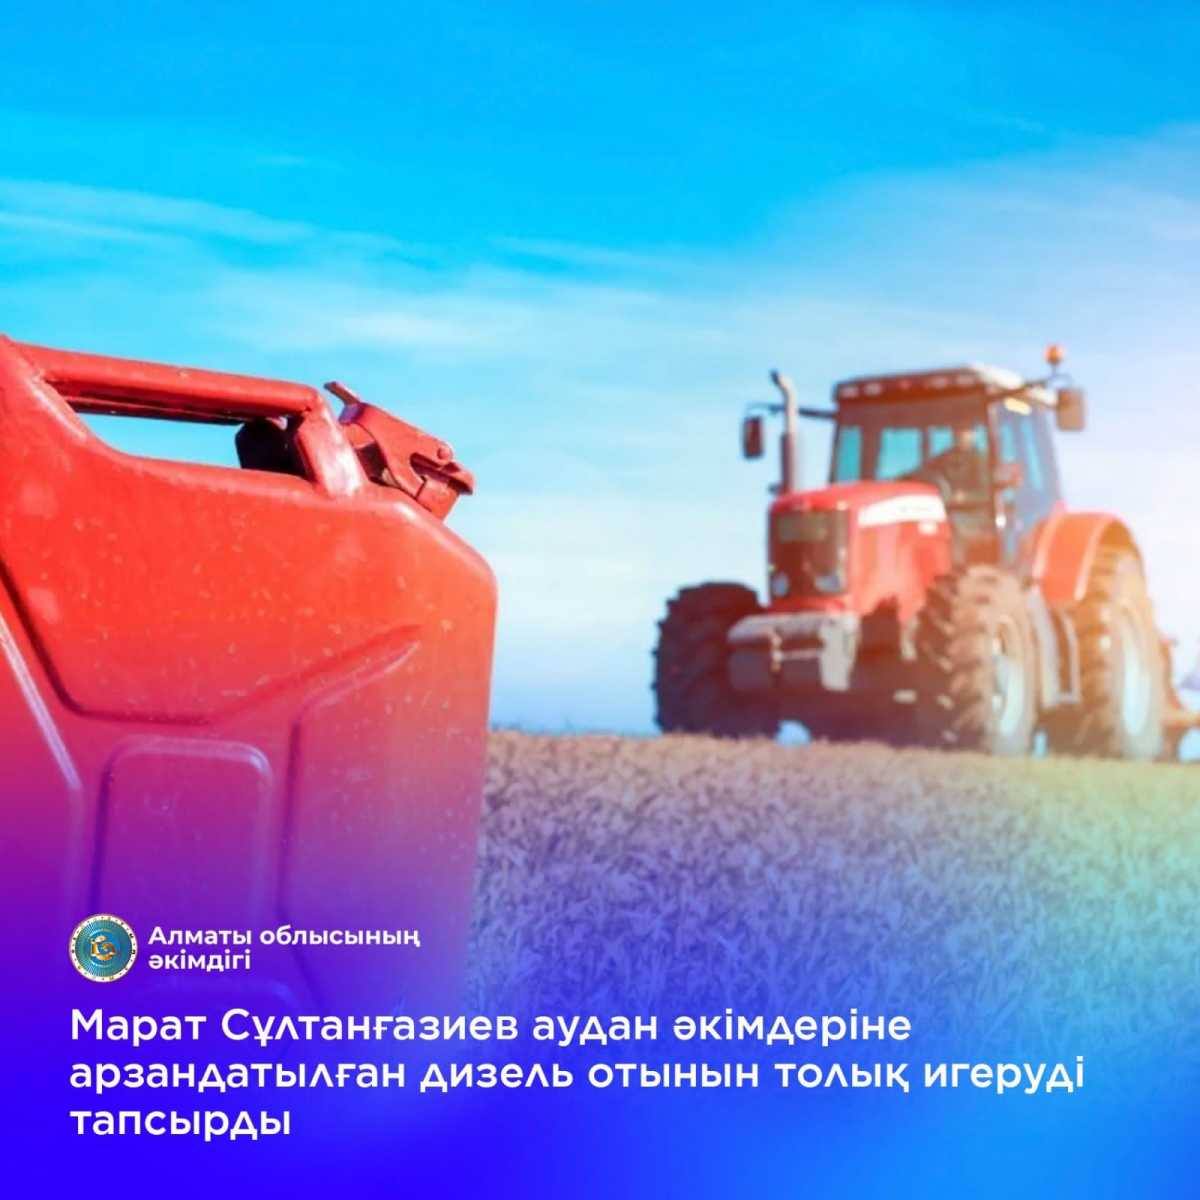 Алматы облысының аграршылары арзандатылған дизель отынын алуға асықпайды